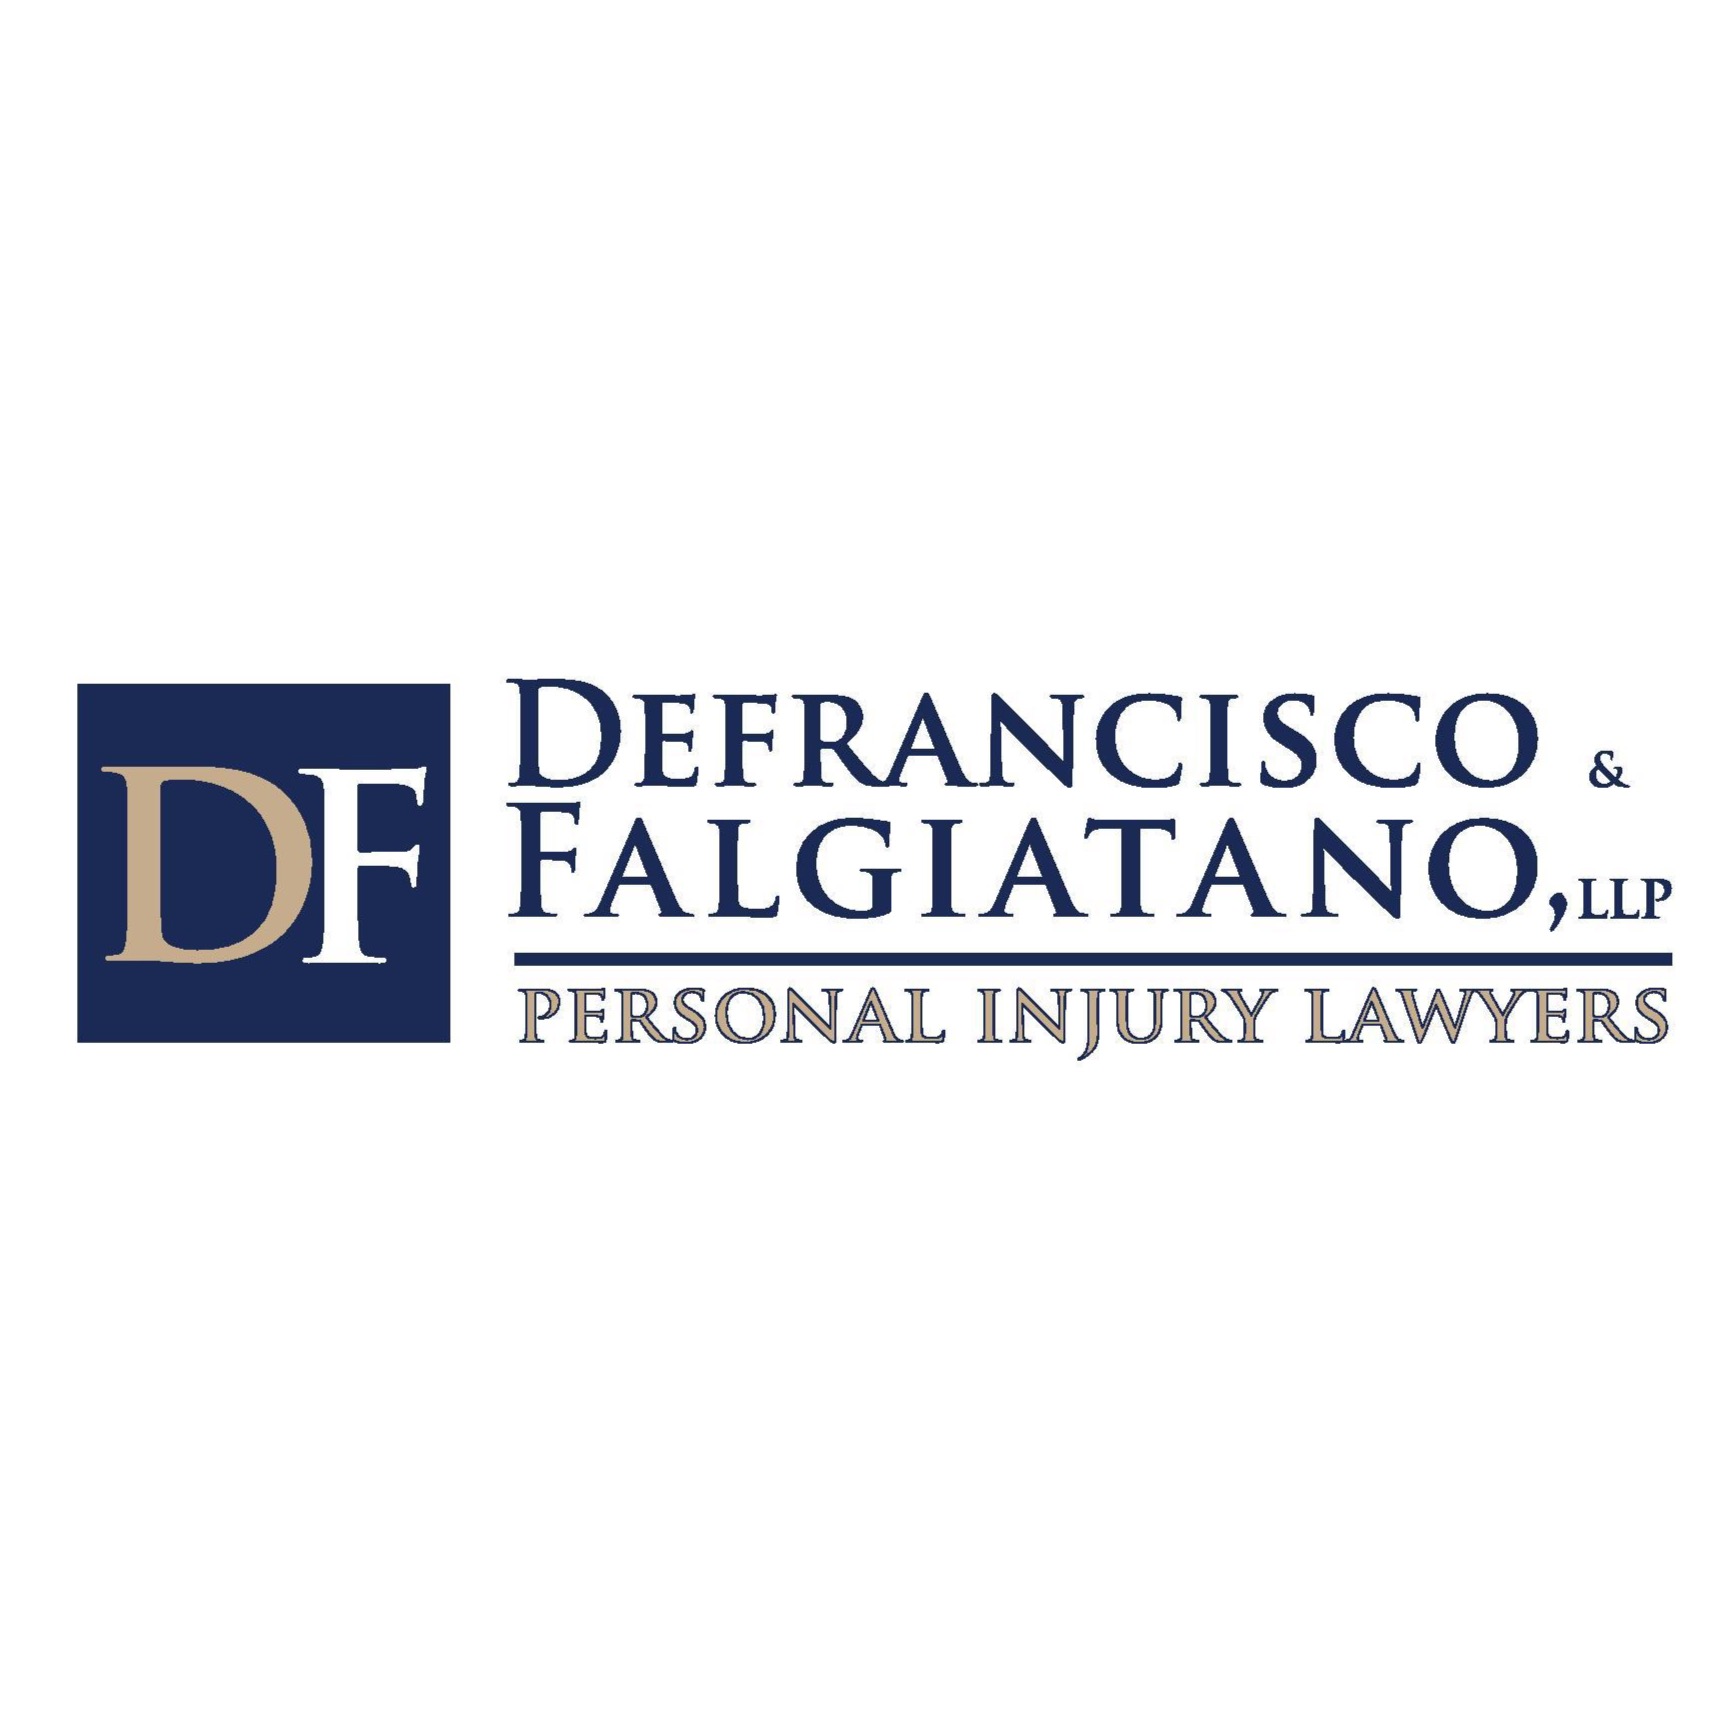 DeFrancisco & Falgiatano Personal Injury Lawyers East Syracuse (315)479-9000